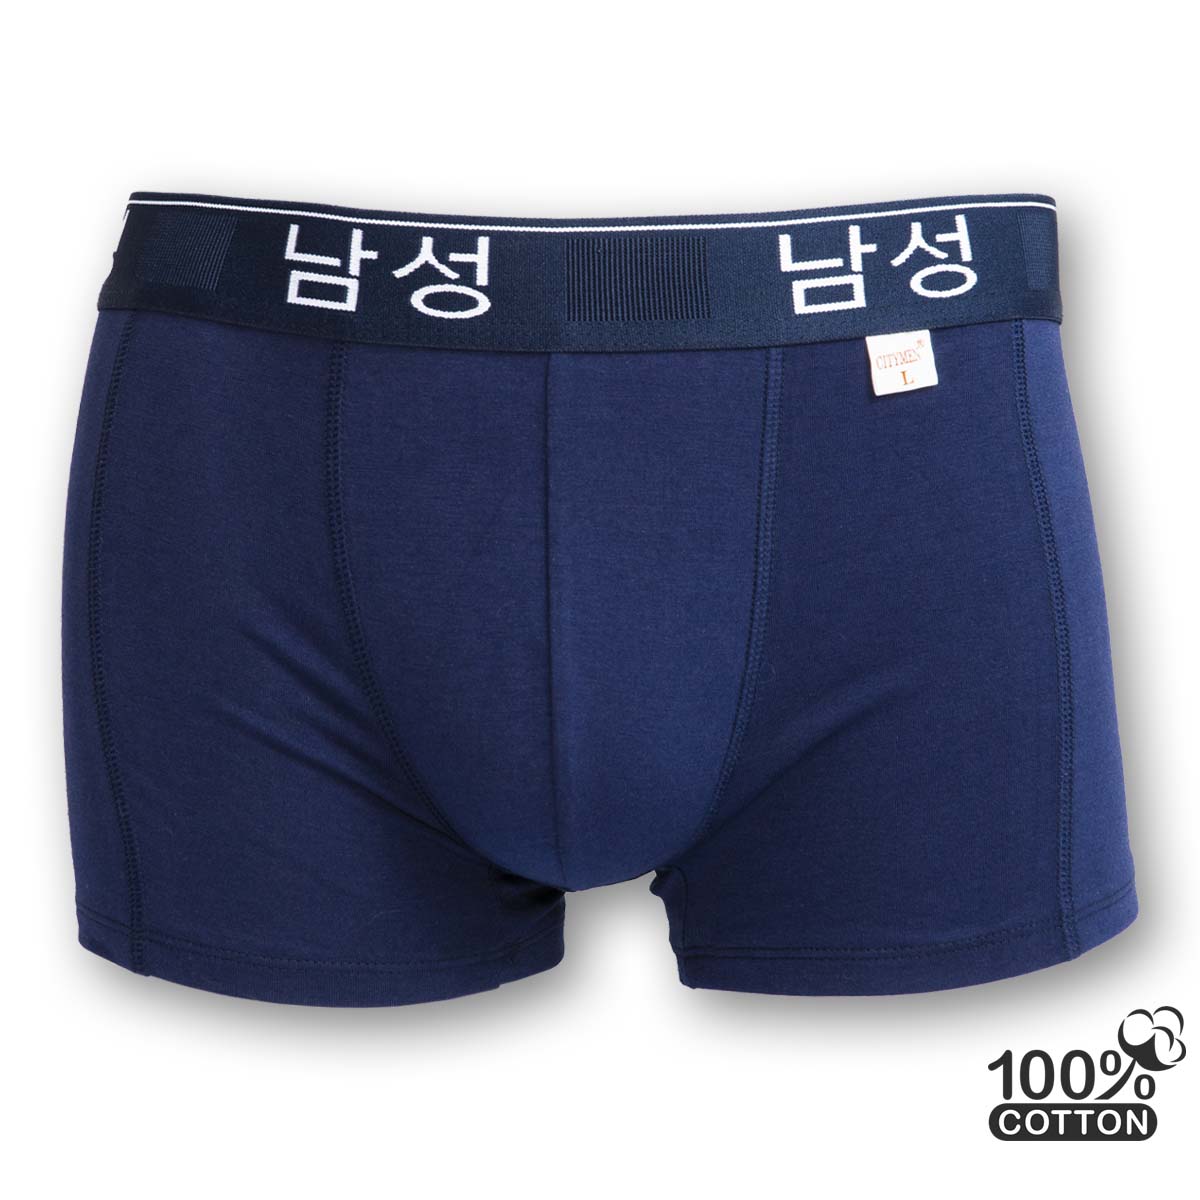 Hộp 4 Quần lót nam boxer CITYMEN cao cấp lưng Hàn Quốc vải cotton 4 chiều sịp đùi nam - Giao màu ngẫu nhiên